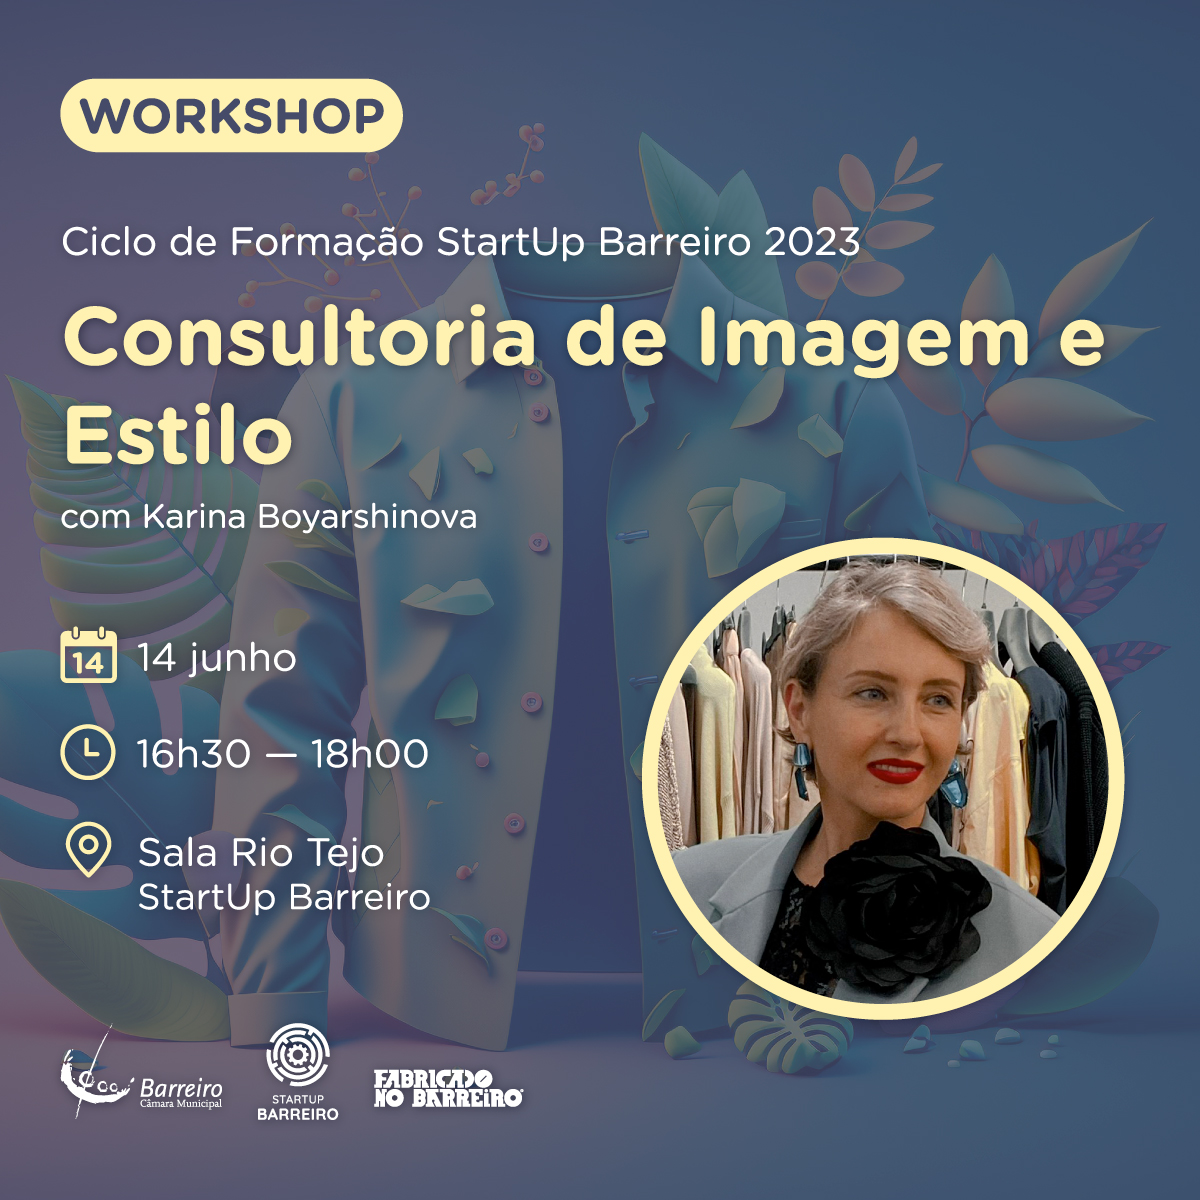 Workshop "Consultoria de Imagem e Estilo" dia 14 de junho de 2023